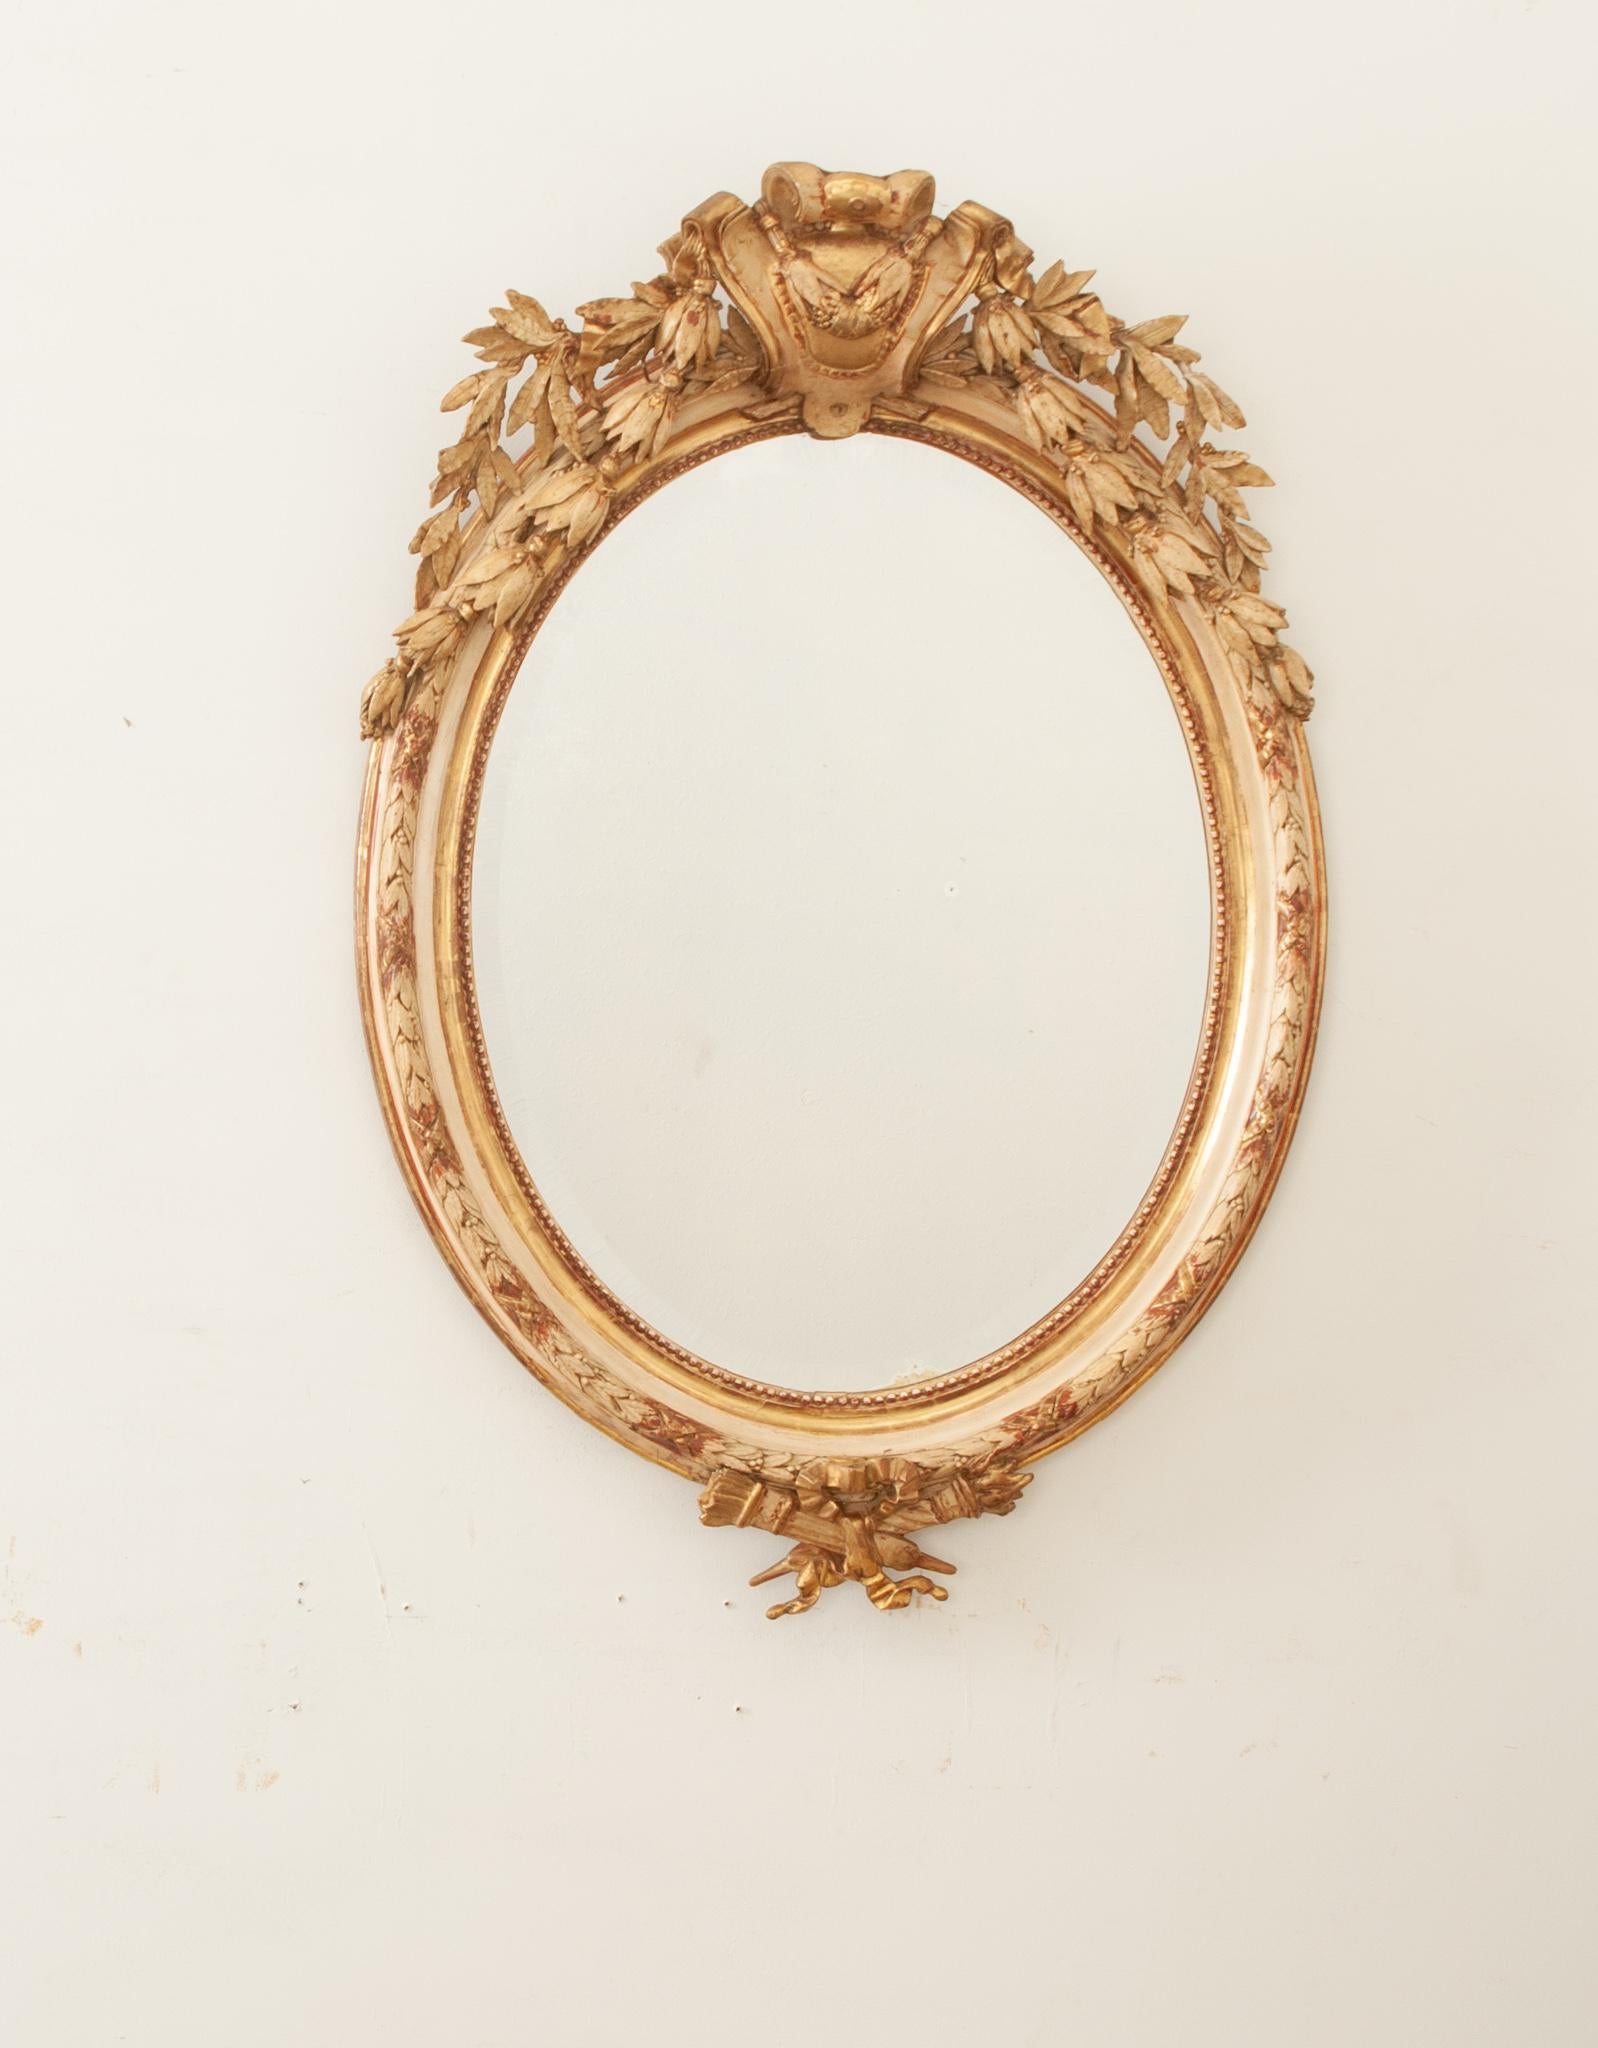 Miroir mural en bois sculpté et doré de style Louis XVI, datant de 1840, fabriqué en France au XIXe siècle. Le miroir biseauté au mercure d'origine est en très bon état et est entouré d'une belle bordure de perles sculptées dans son cadre peint en